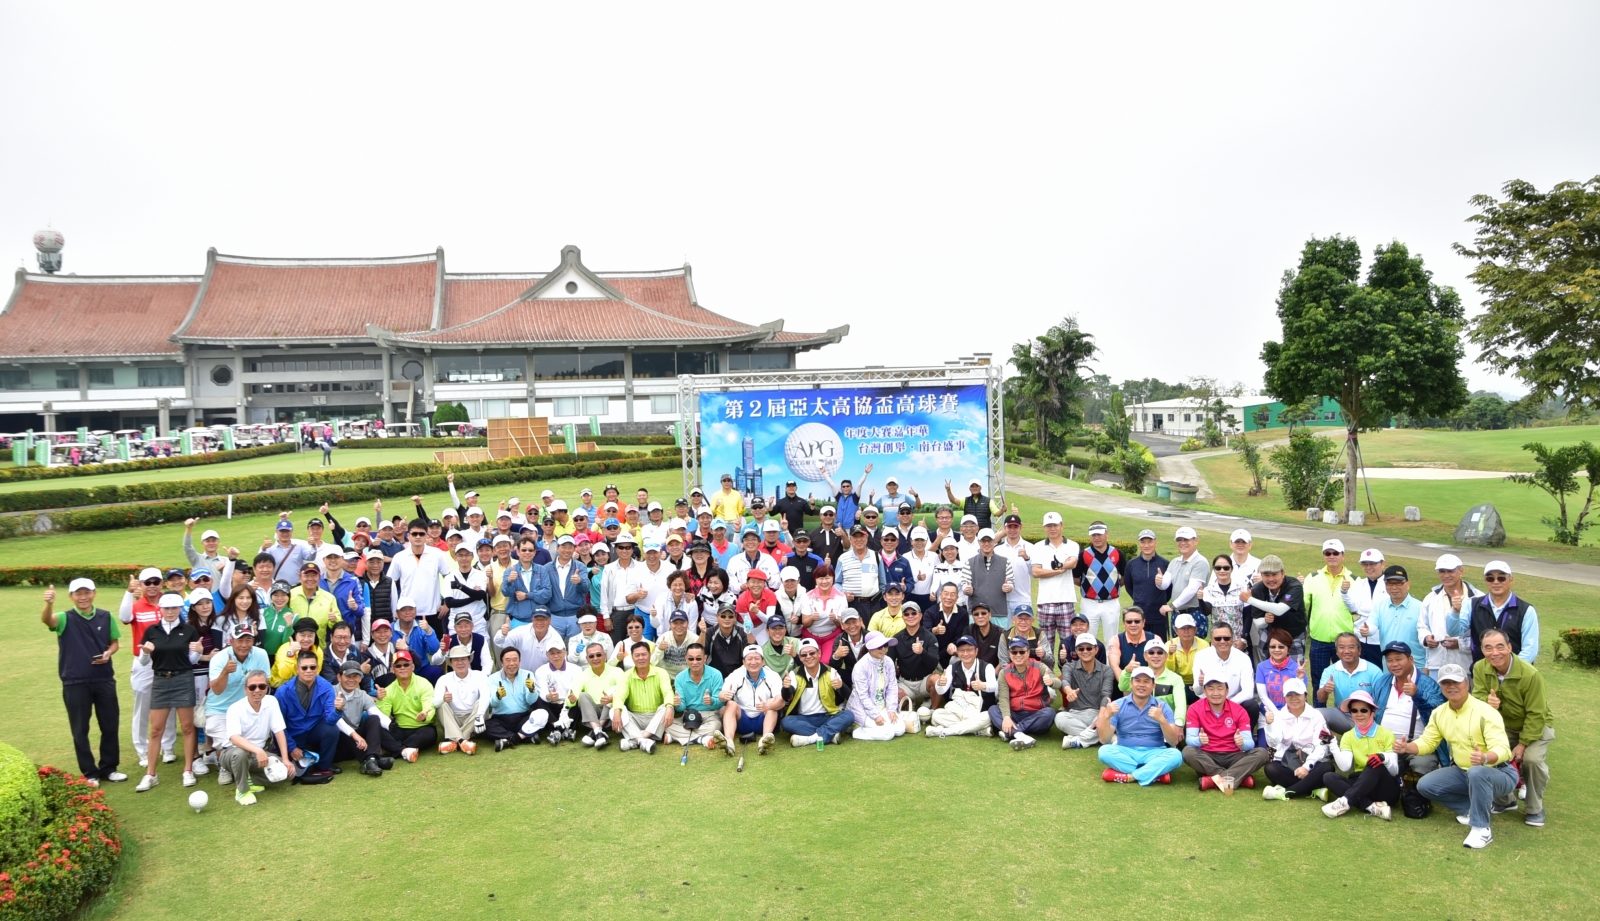 亞太高爾夫交流協會(APG) 辦活動，參賽人數大爆表；賽事地點為高雄信誼高爾夫球場。